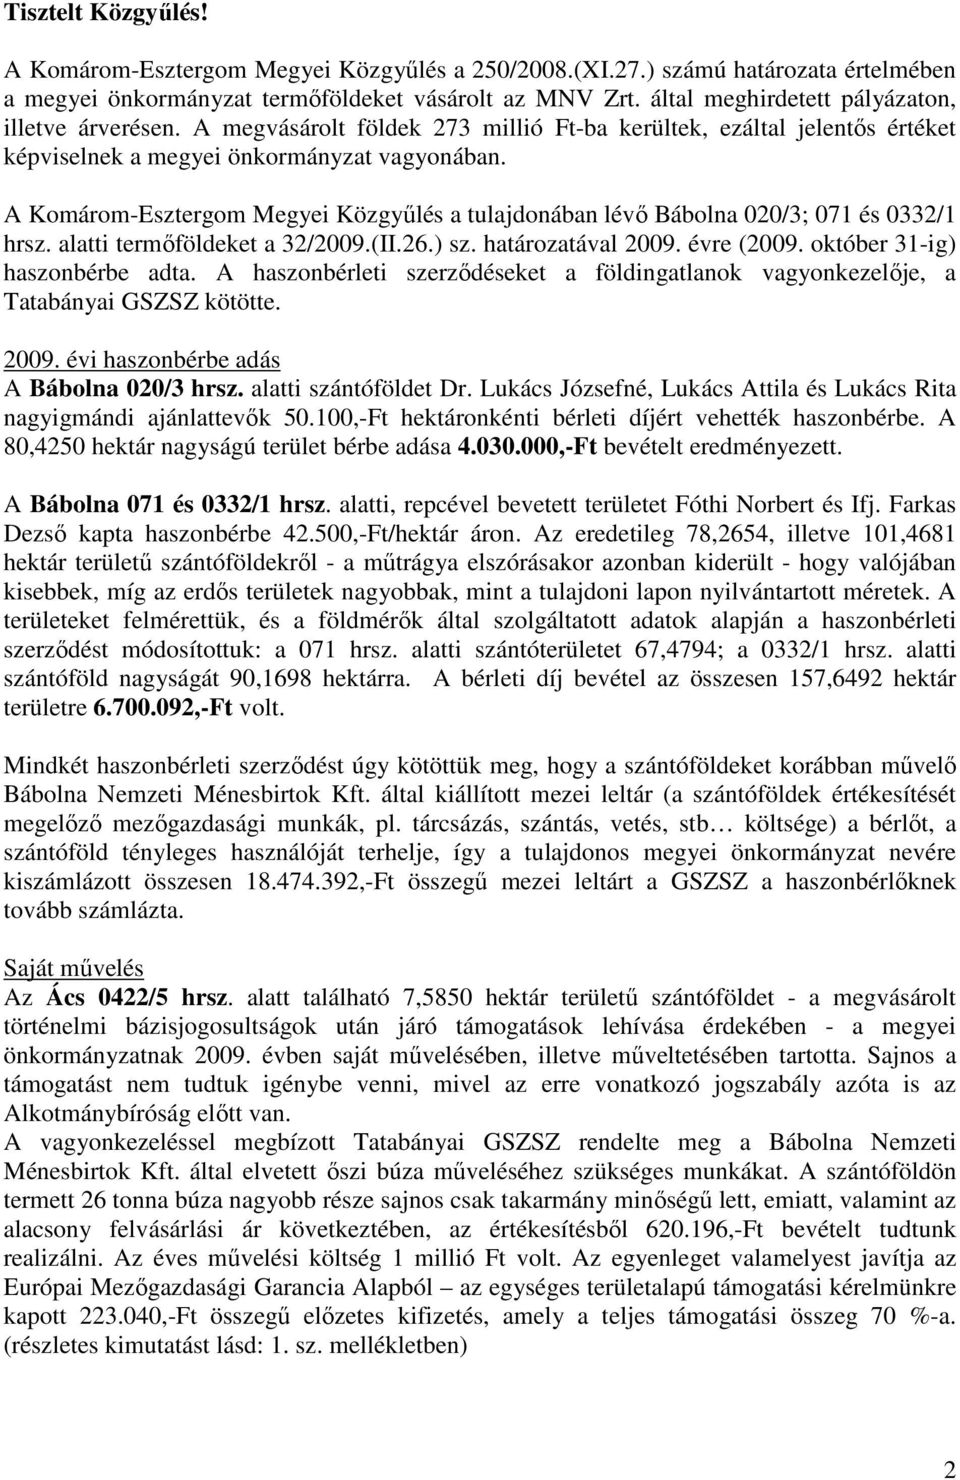 A Komárom-Esztergom Megyei Közgyőlés a tulajdonában lévı Bábolna 020/3; 071 és 0332/1 hrsz. alatti termıföldeket a 32/2009.(II.26.) sz. határozatával 2009. évre (2009. október 31-ig) haszonbérbe adta.